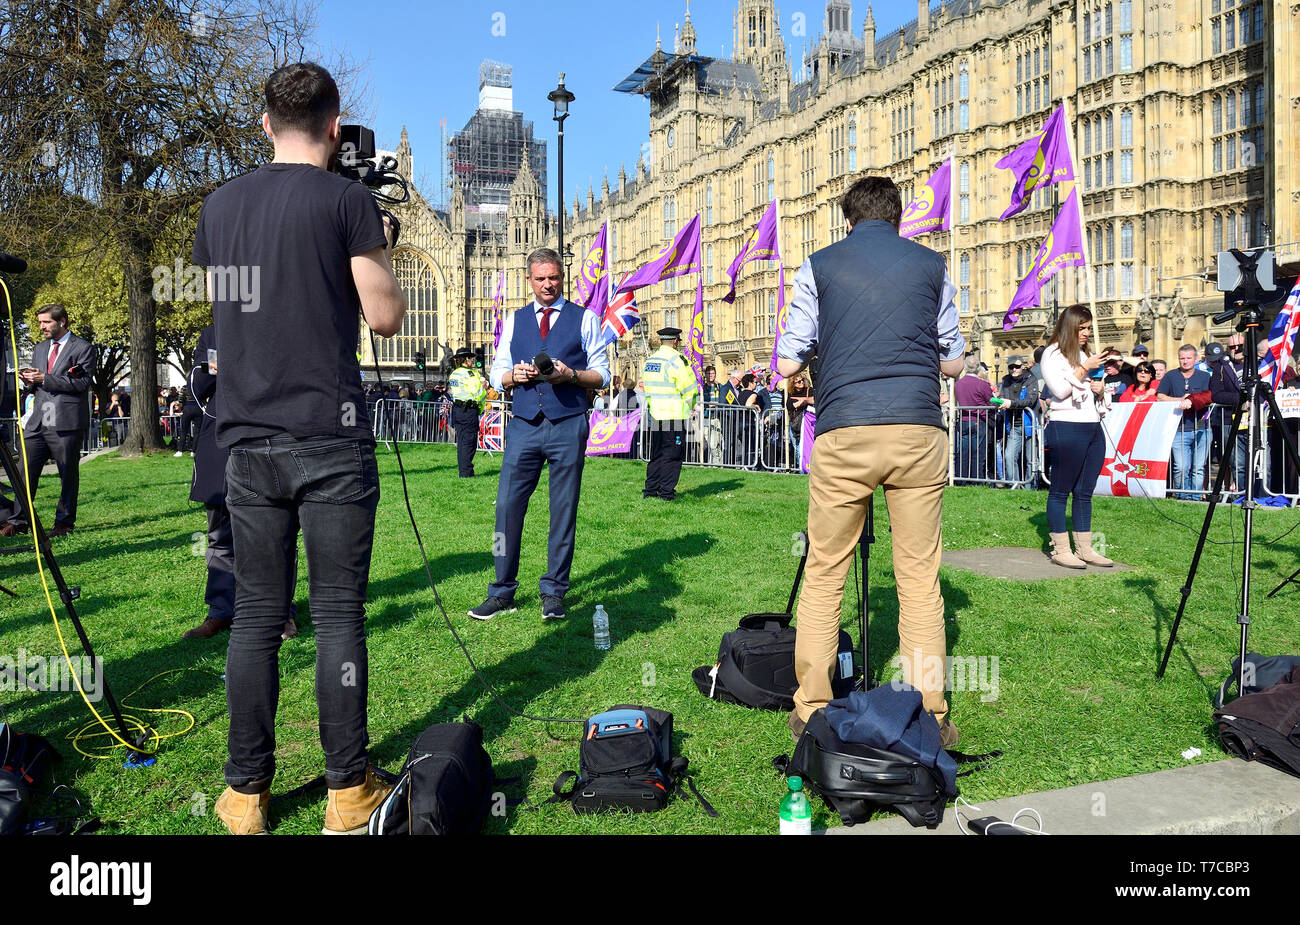 London, England, UK. Ausländischen TV-Reporter am College Green/Abingdon Street Gardens, während Brexit Debatten, März 2019. Stockfoto